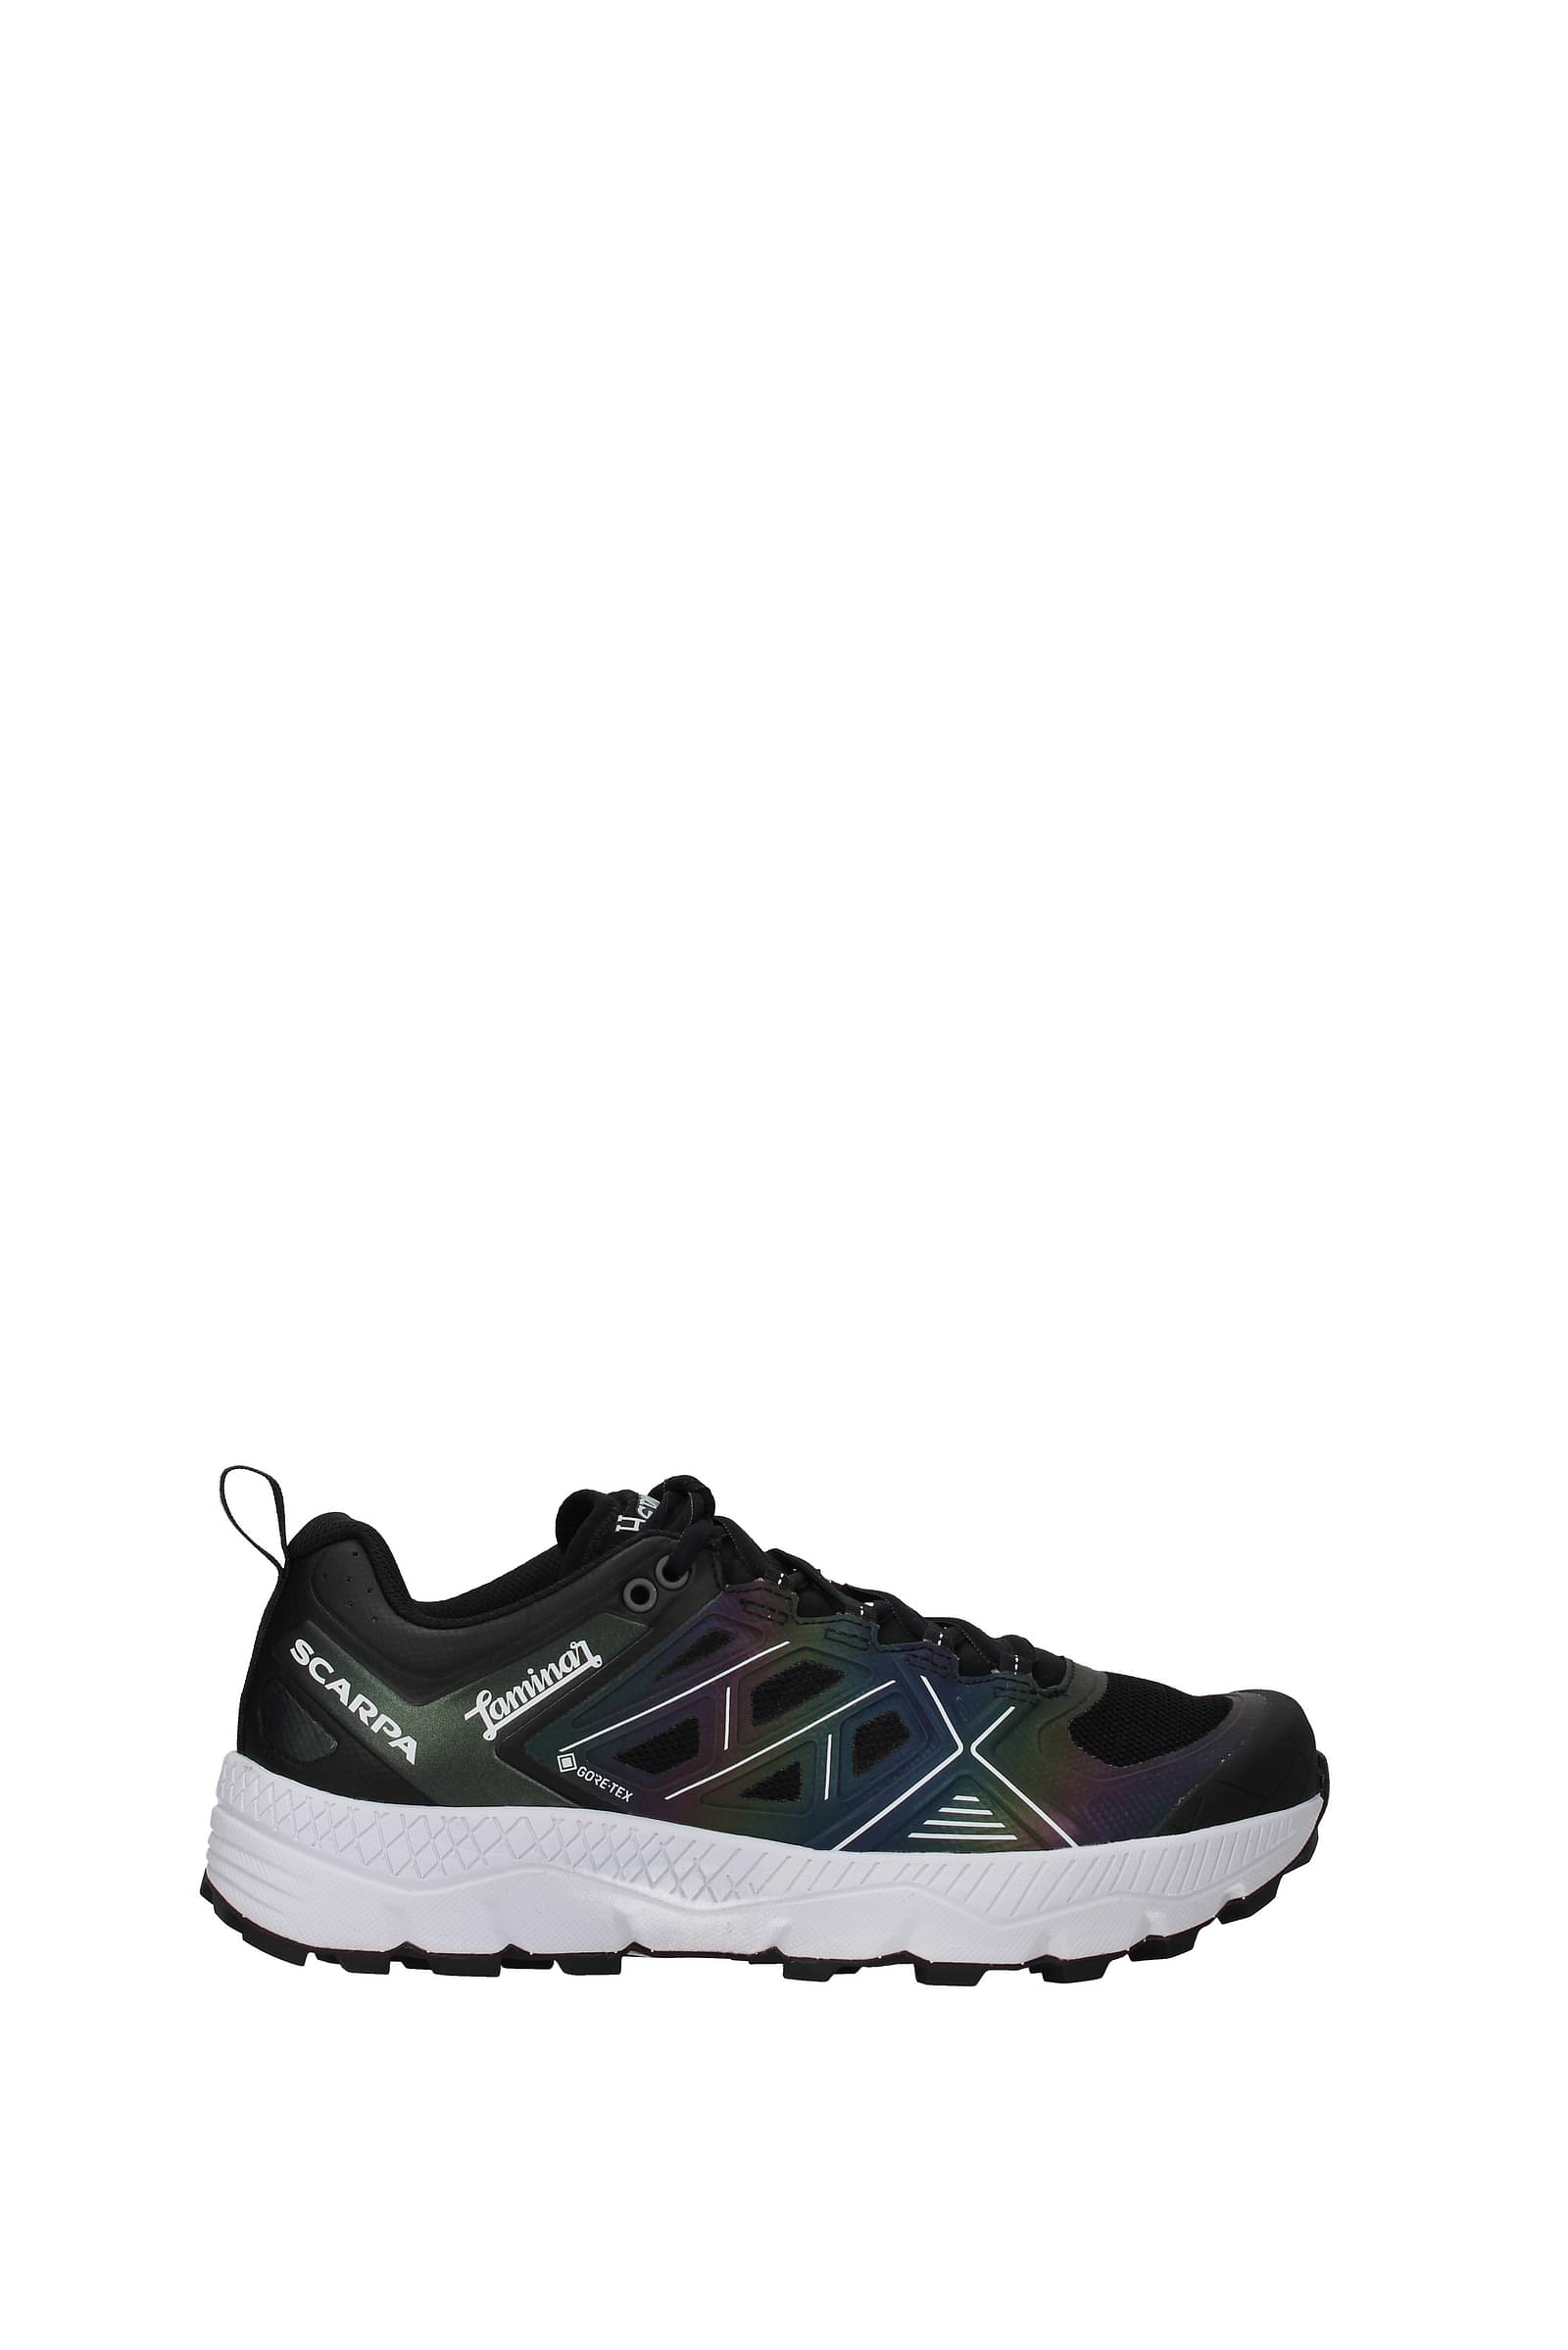 Herno Sneakers laminar by scarpa Women Polyamide Black Multicolor